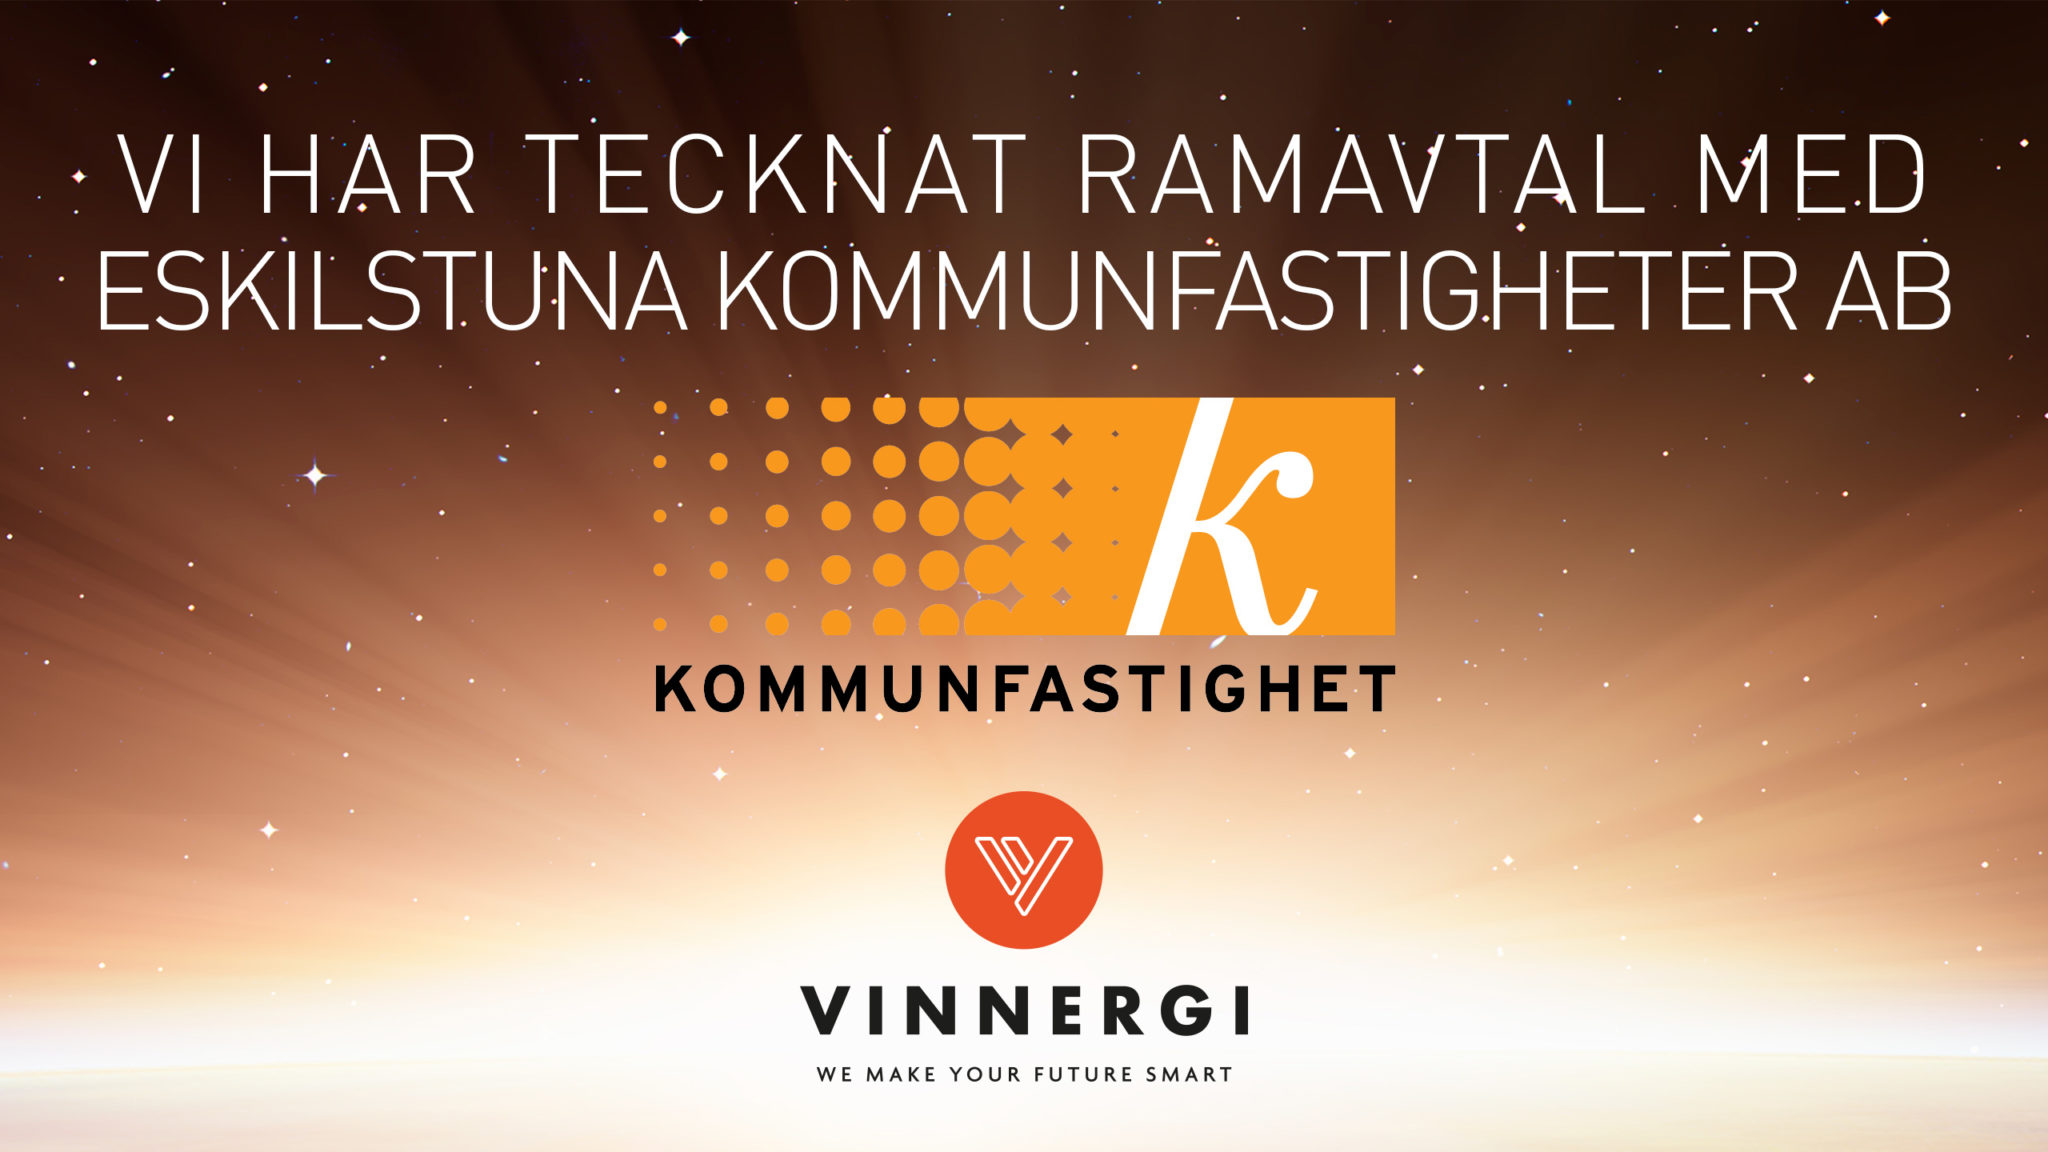 Vinnergi har tecknat ett nytt ramavtal med Eskilstuna Kommunfastigheter AB för elrevisioner